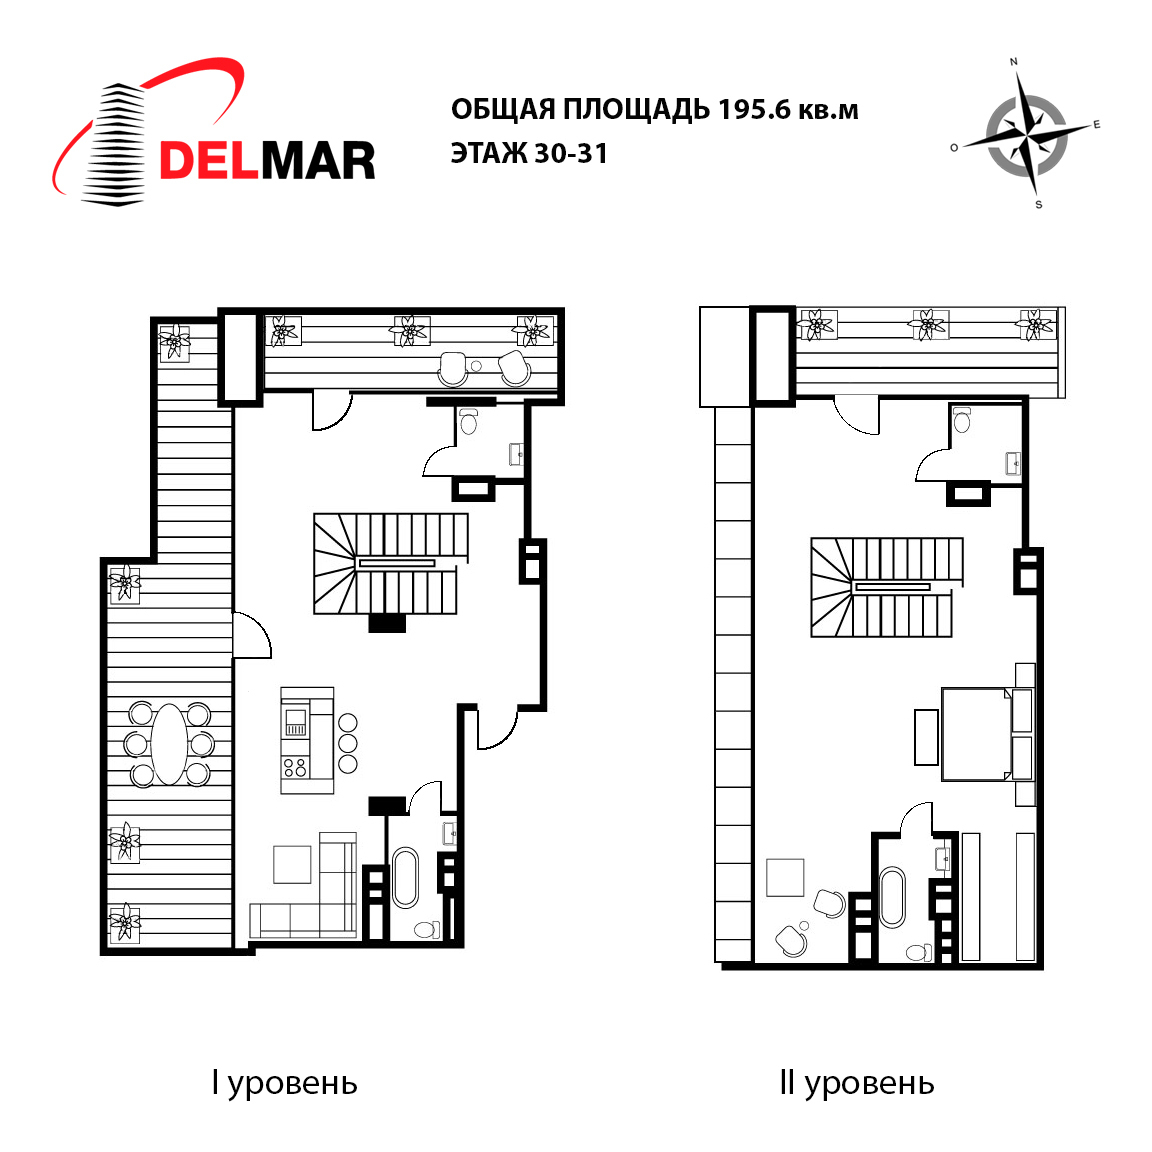 3-комнатная 195.6 м² в ЖК Delmar от 52 200 грн/м², Киев